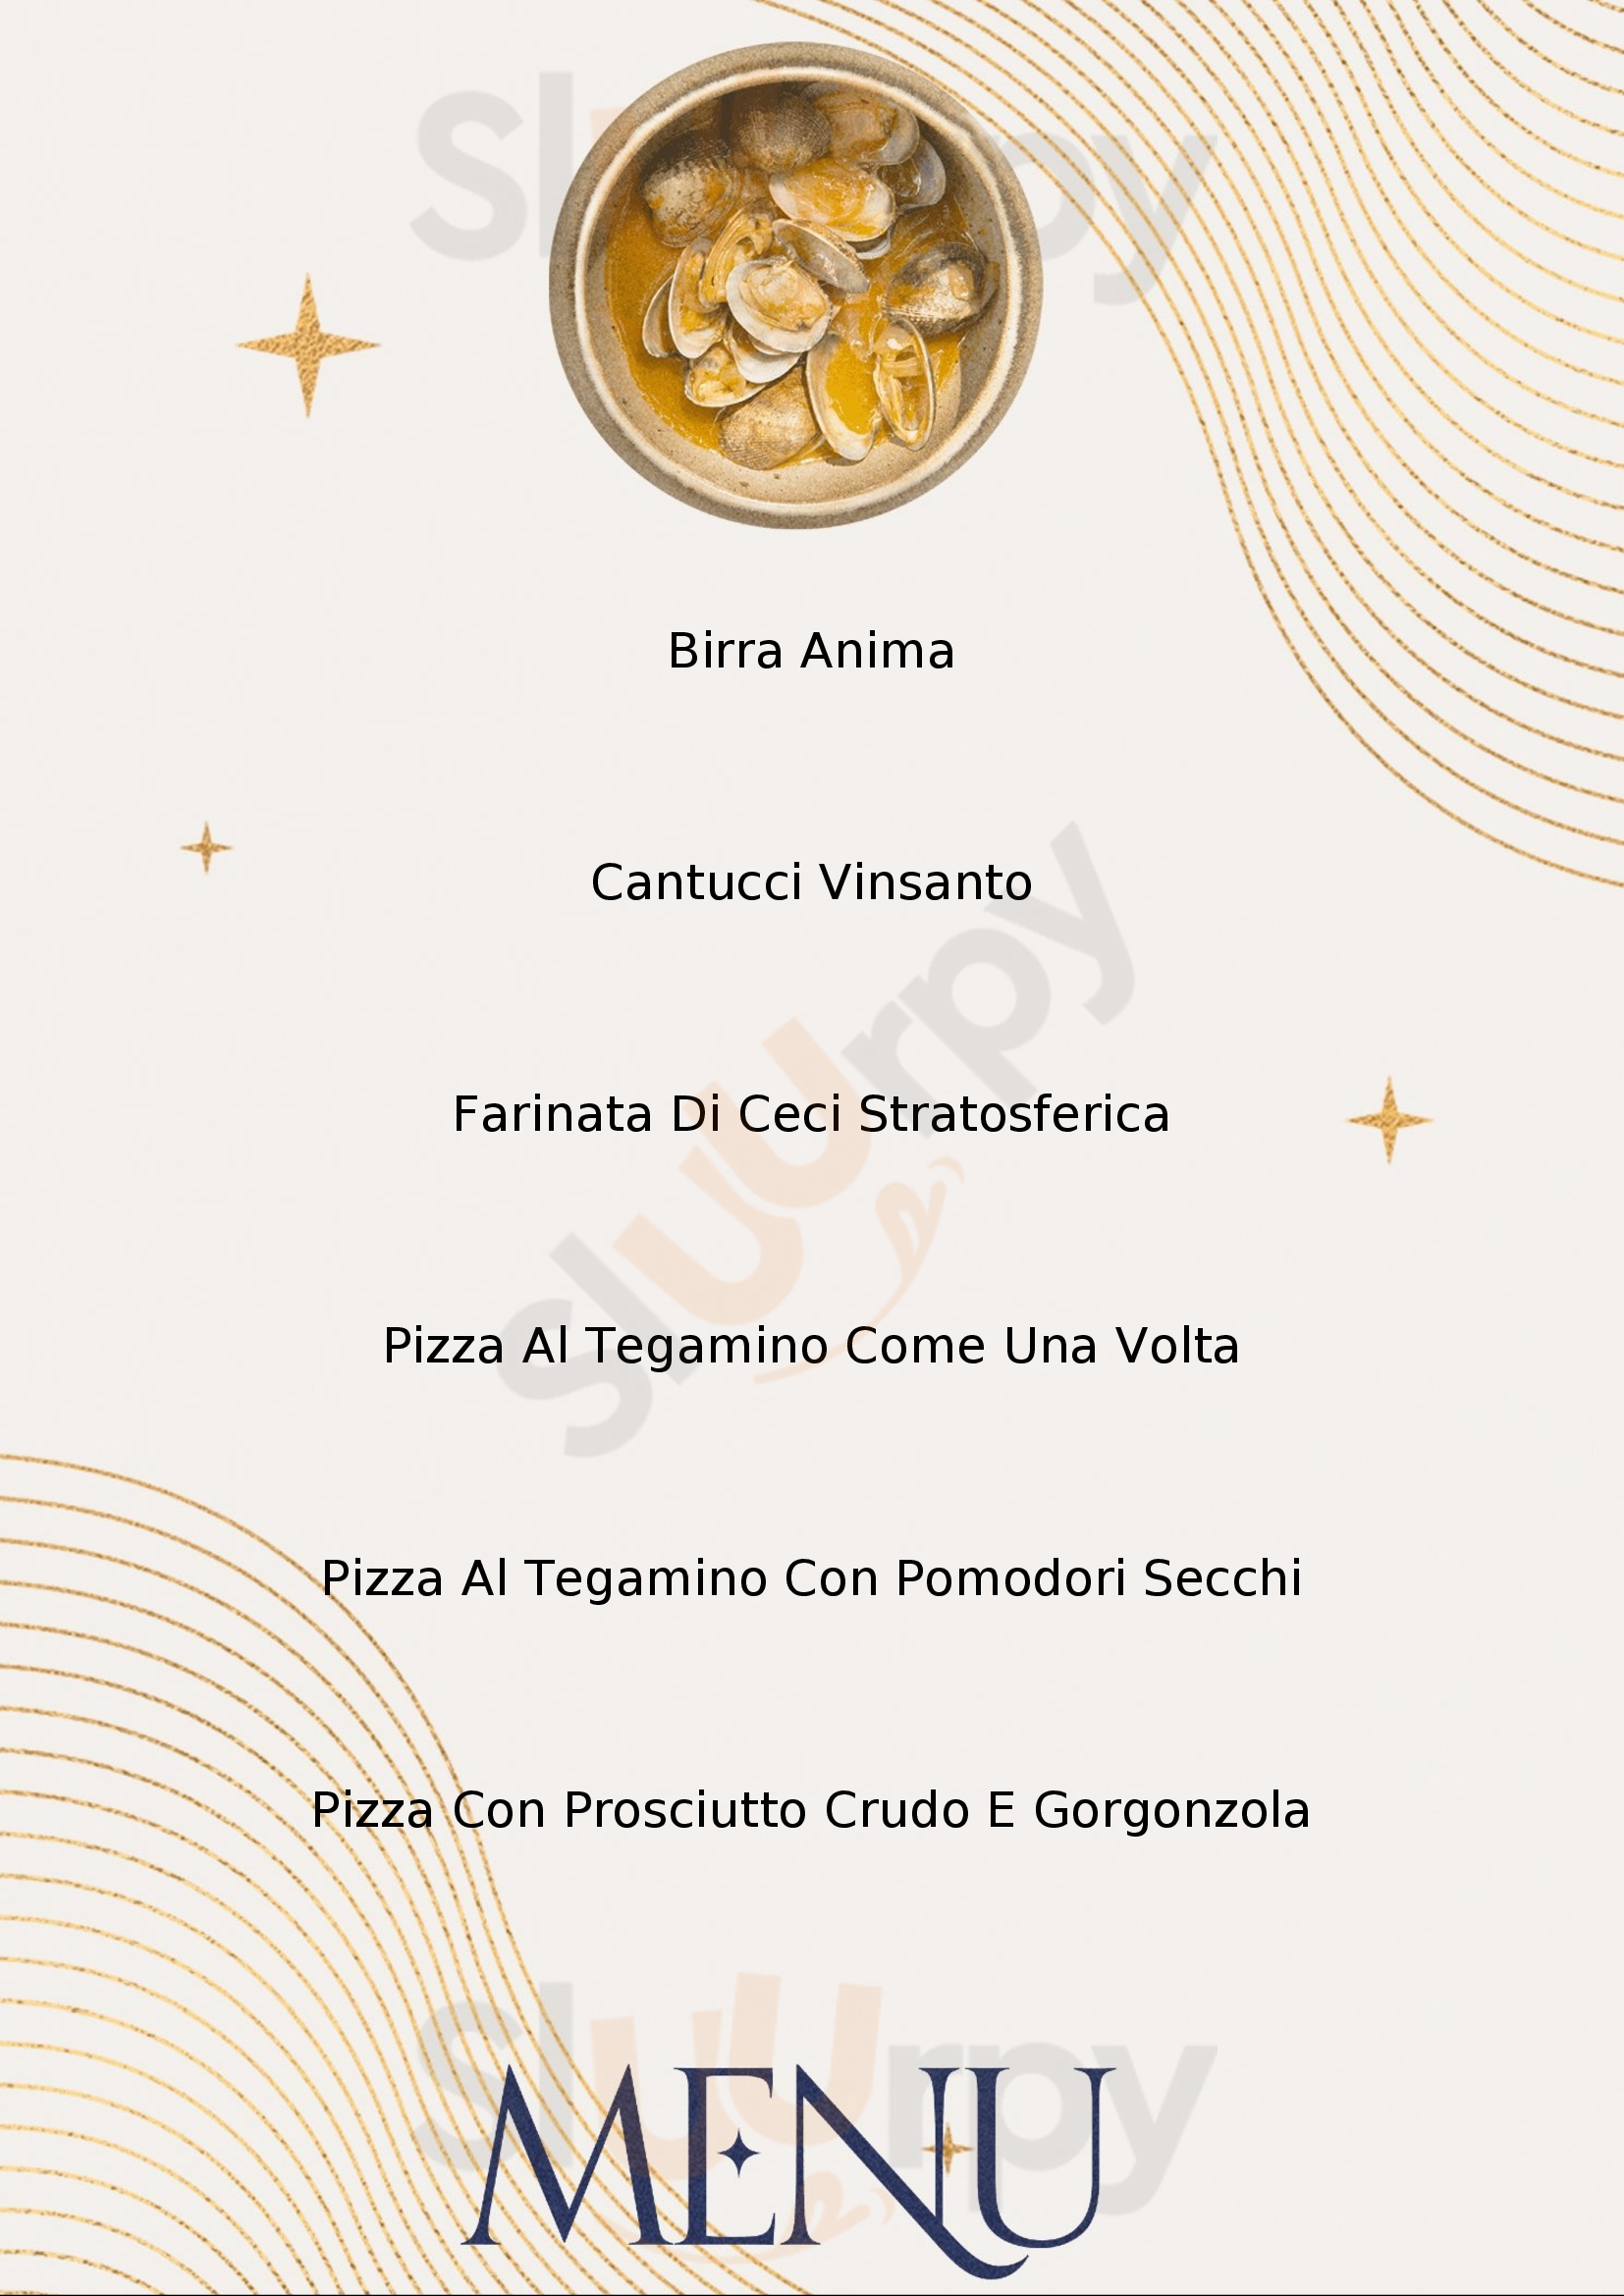 Farinata & Pizza da Luciano Cairo Montenotte menù 1 pagina